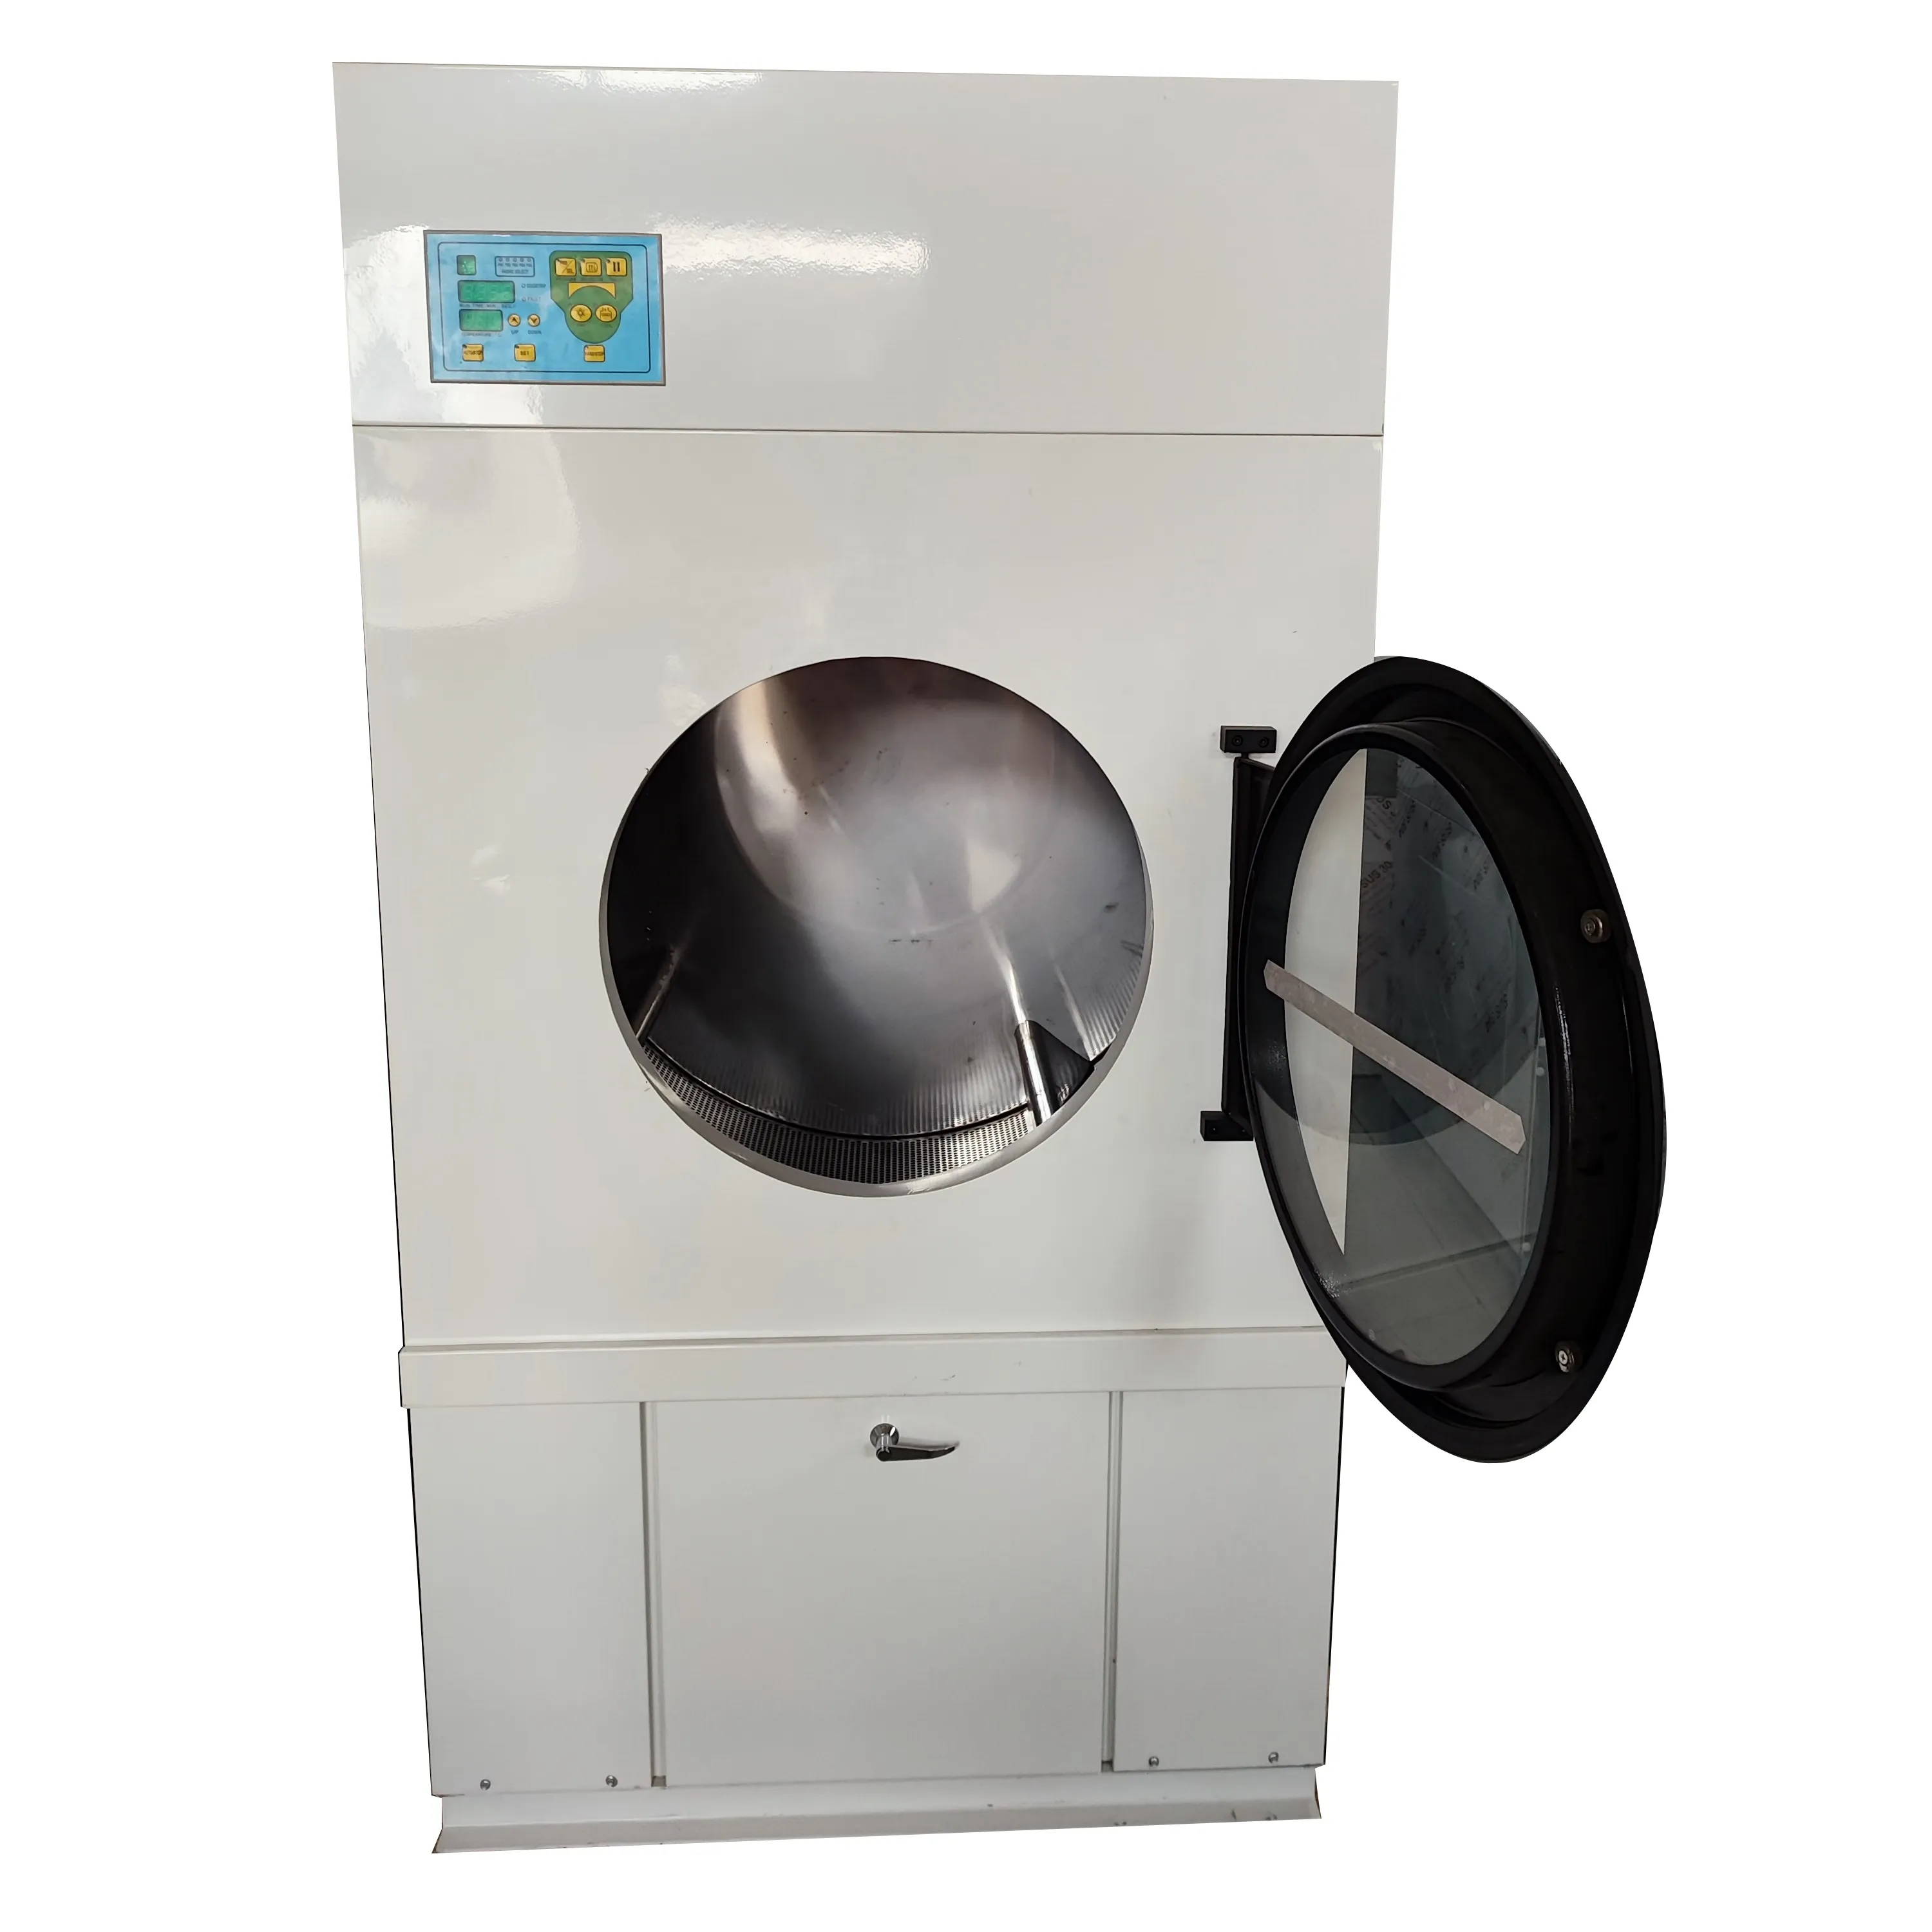 Ad alte prestazioni commerciale Hotel ospedale industriale lavatrice in acciaio inox elettrico automatico 100kg per stirare asciugatrice